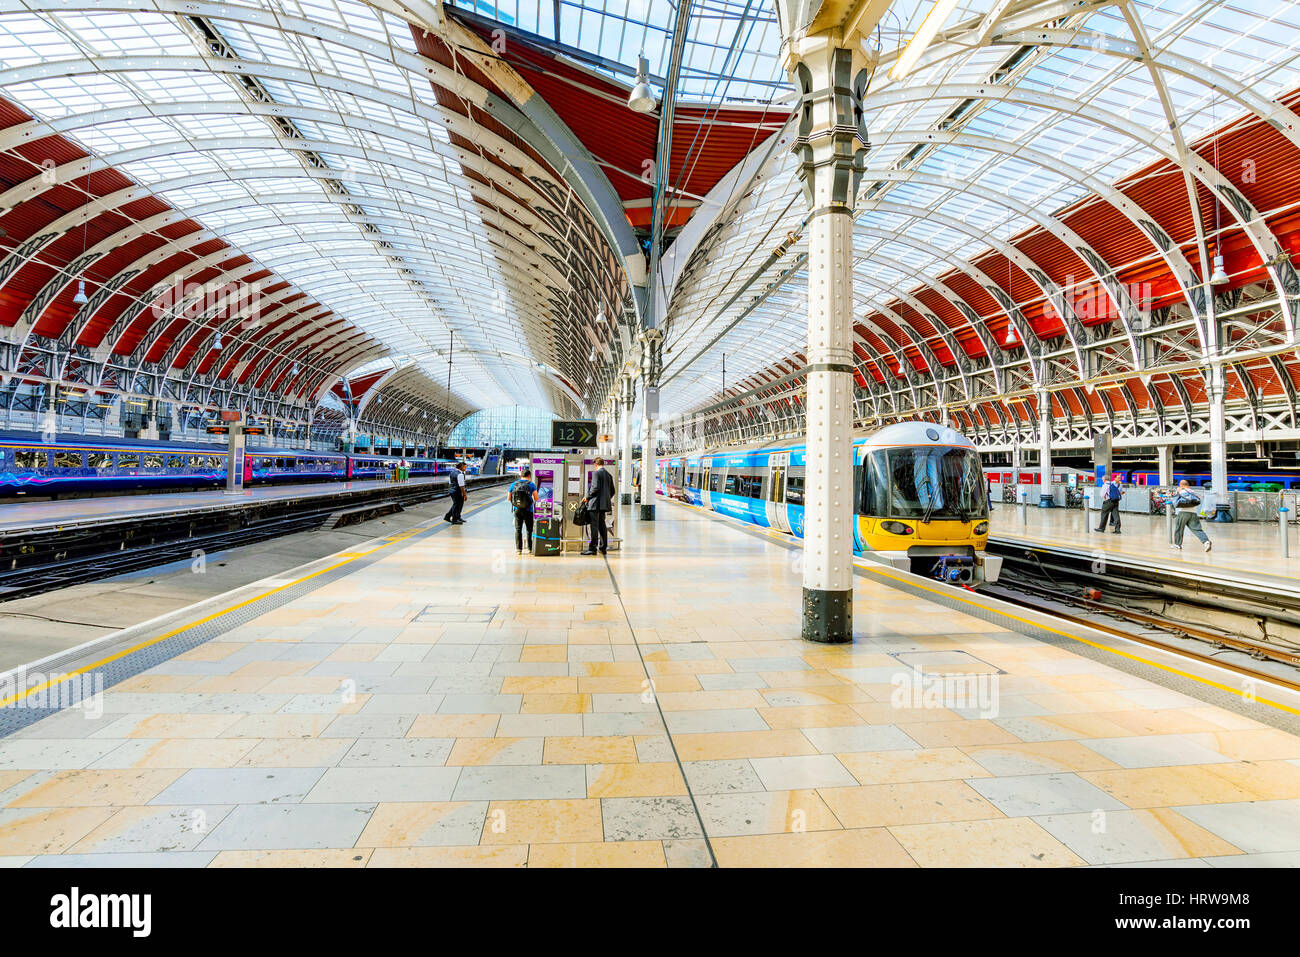 LONDON - SEPTEMBER 08: Dies ist die Innenarchitektur der Paddington Station einen berühmten Bahnhof im Zentrum von London 8. September 2016 in Londo Stockfoto